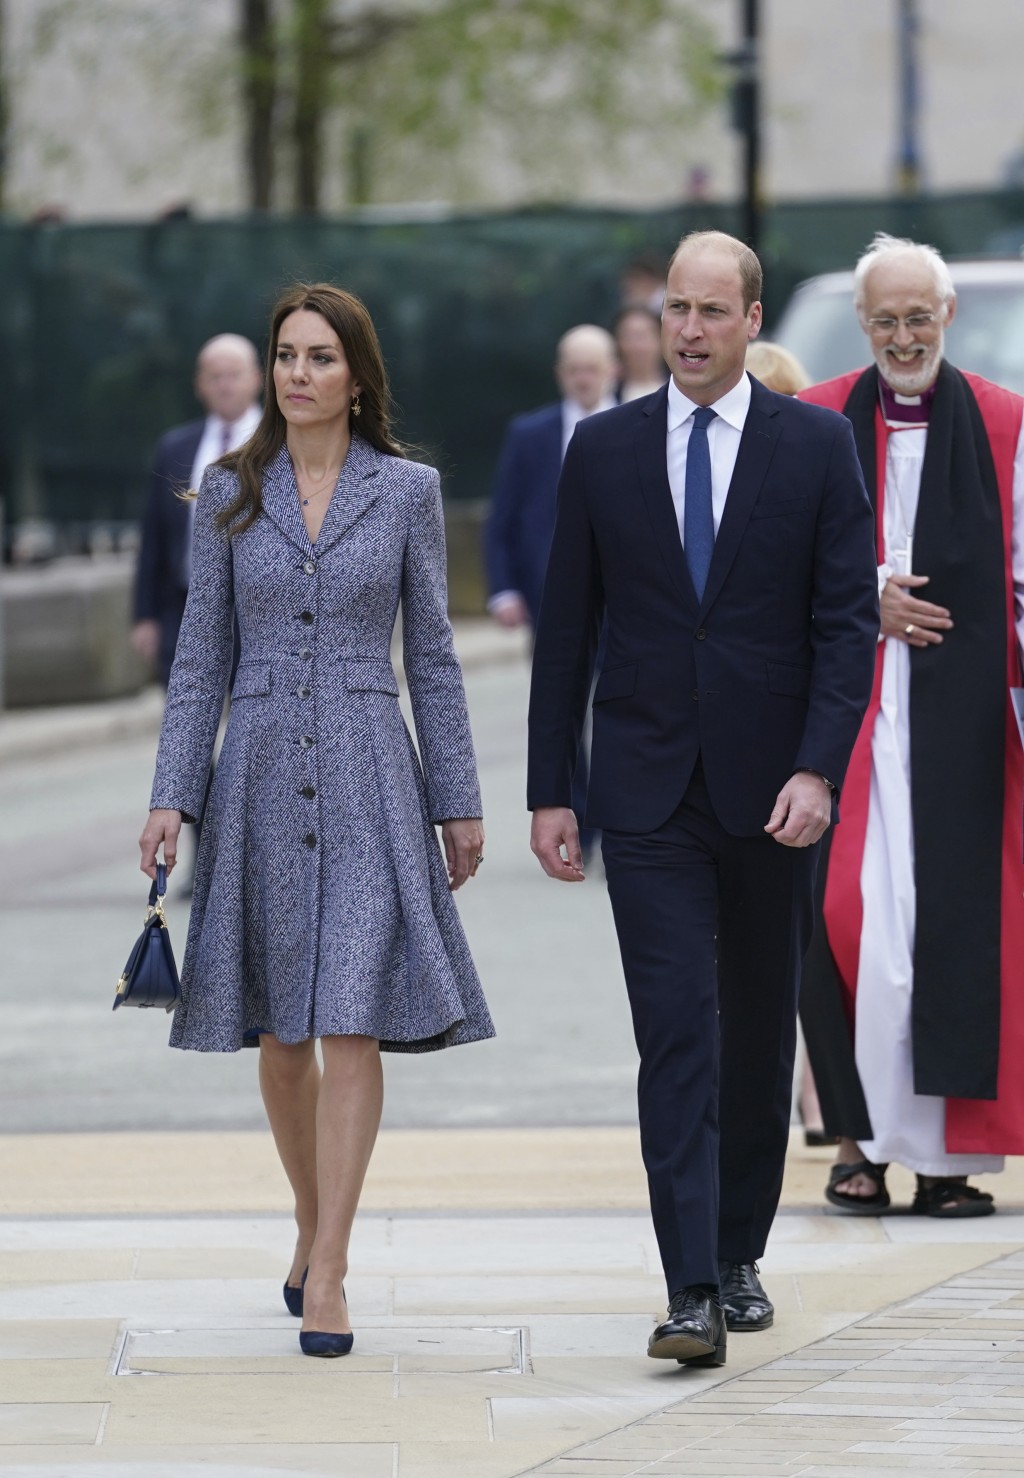 較早前，凱特皇妃到英國曼徹斯特出席紀念活動時，她選擇了法國品牌Polène手袋配搭藍色Coat Dress。